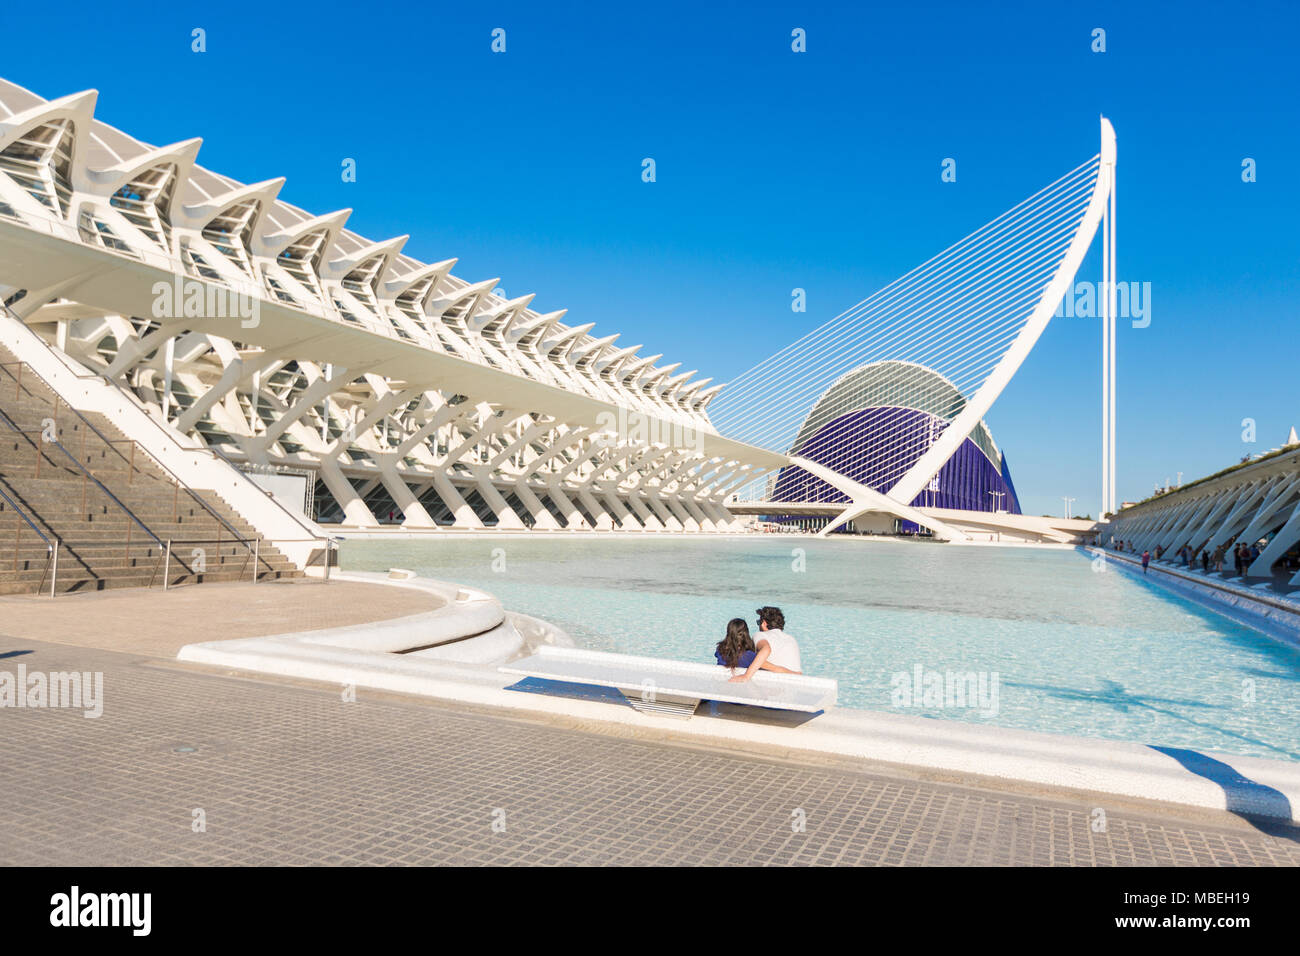 VALENCIA, Espagne - 18 juin 2015 : Jeune couple se détend à la piscine avec vue sur l'Oceanografic dans la cité des arts et des sciencies à Valence, Espagne Banque D'Images